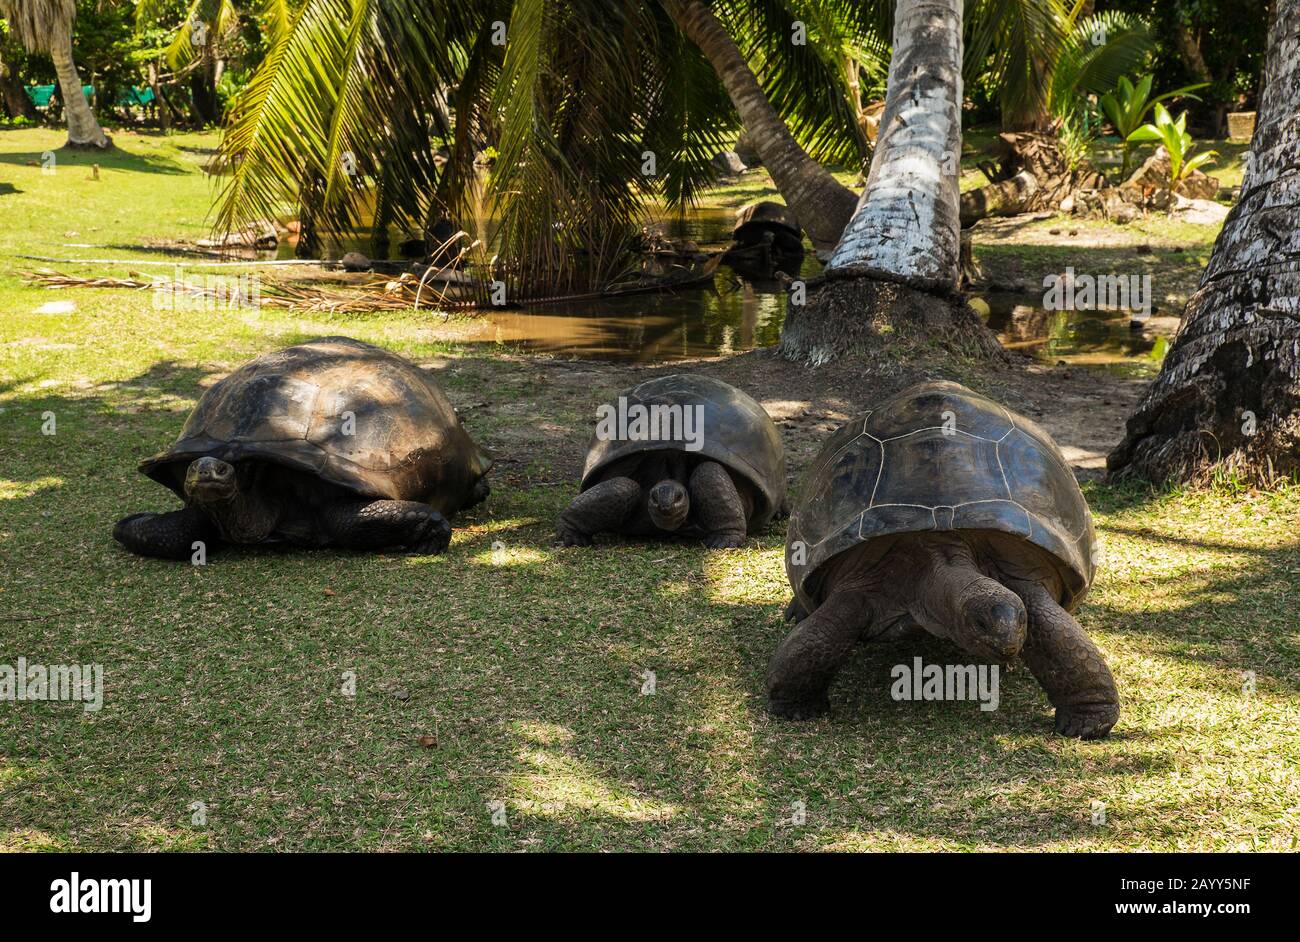 Trois tortues géantes d'Aldabra (Aldabrachys gigantea) à l'île de Curieuse, un havre protégé pour les tortues en voie de disparition Banque D'Images